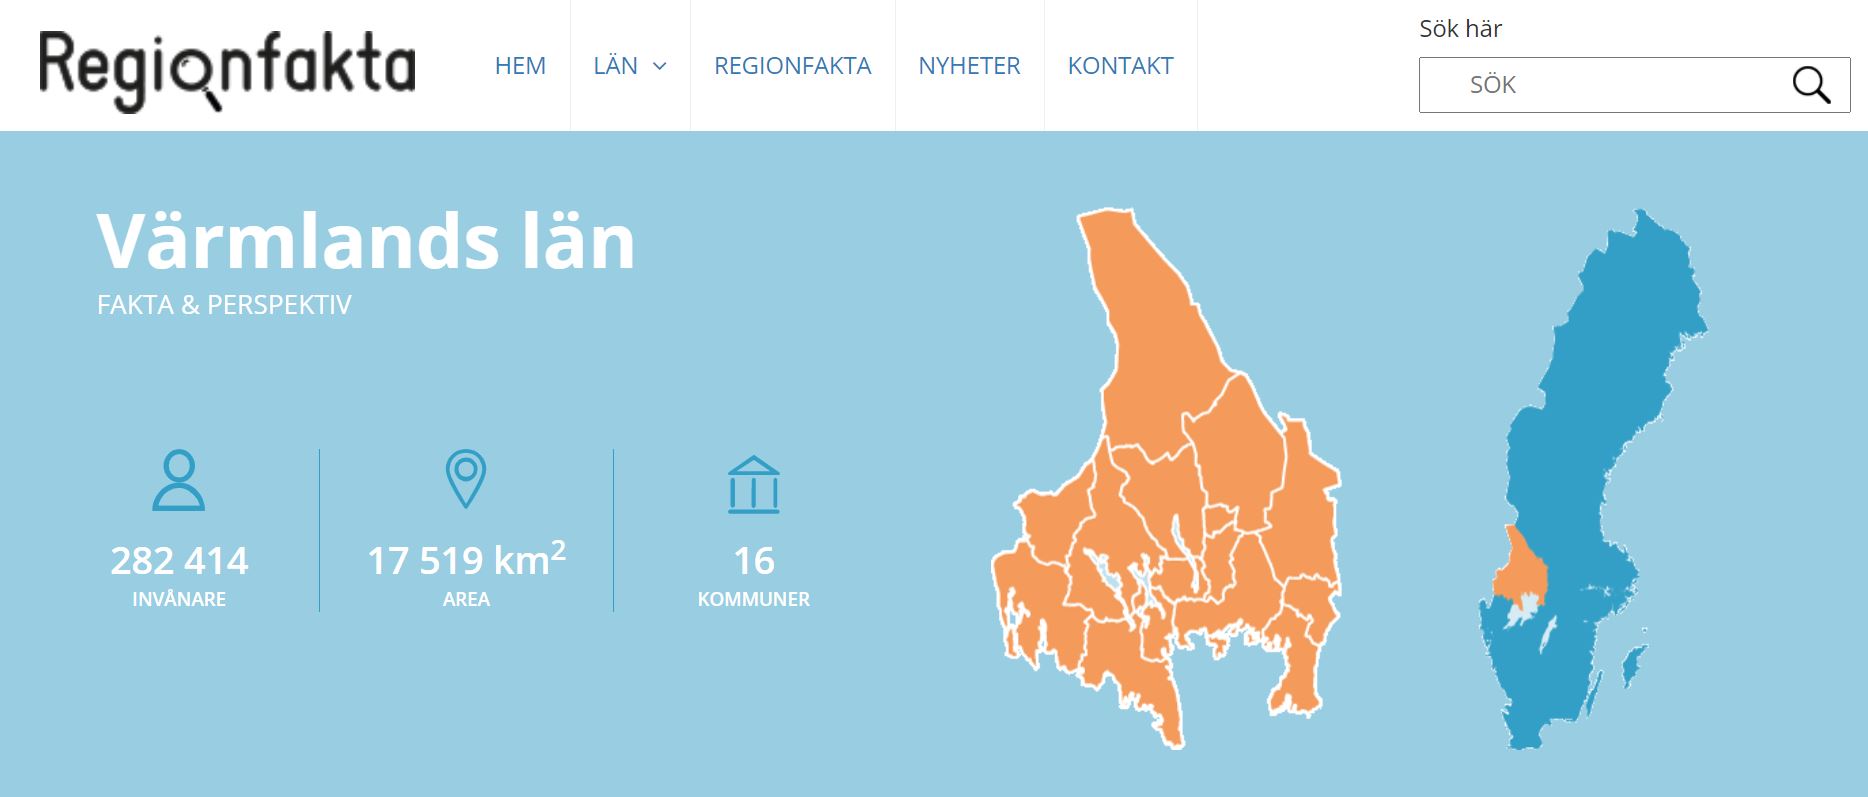 Bild med logotypen för regionfakta och en karta över Värmland